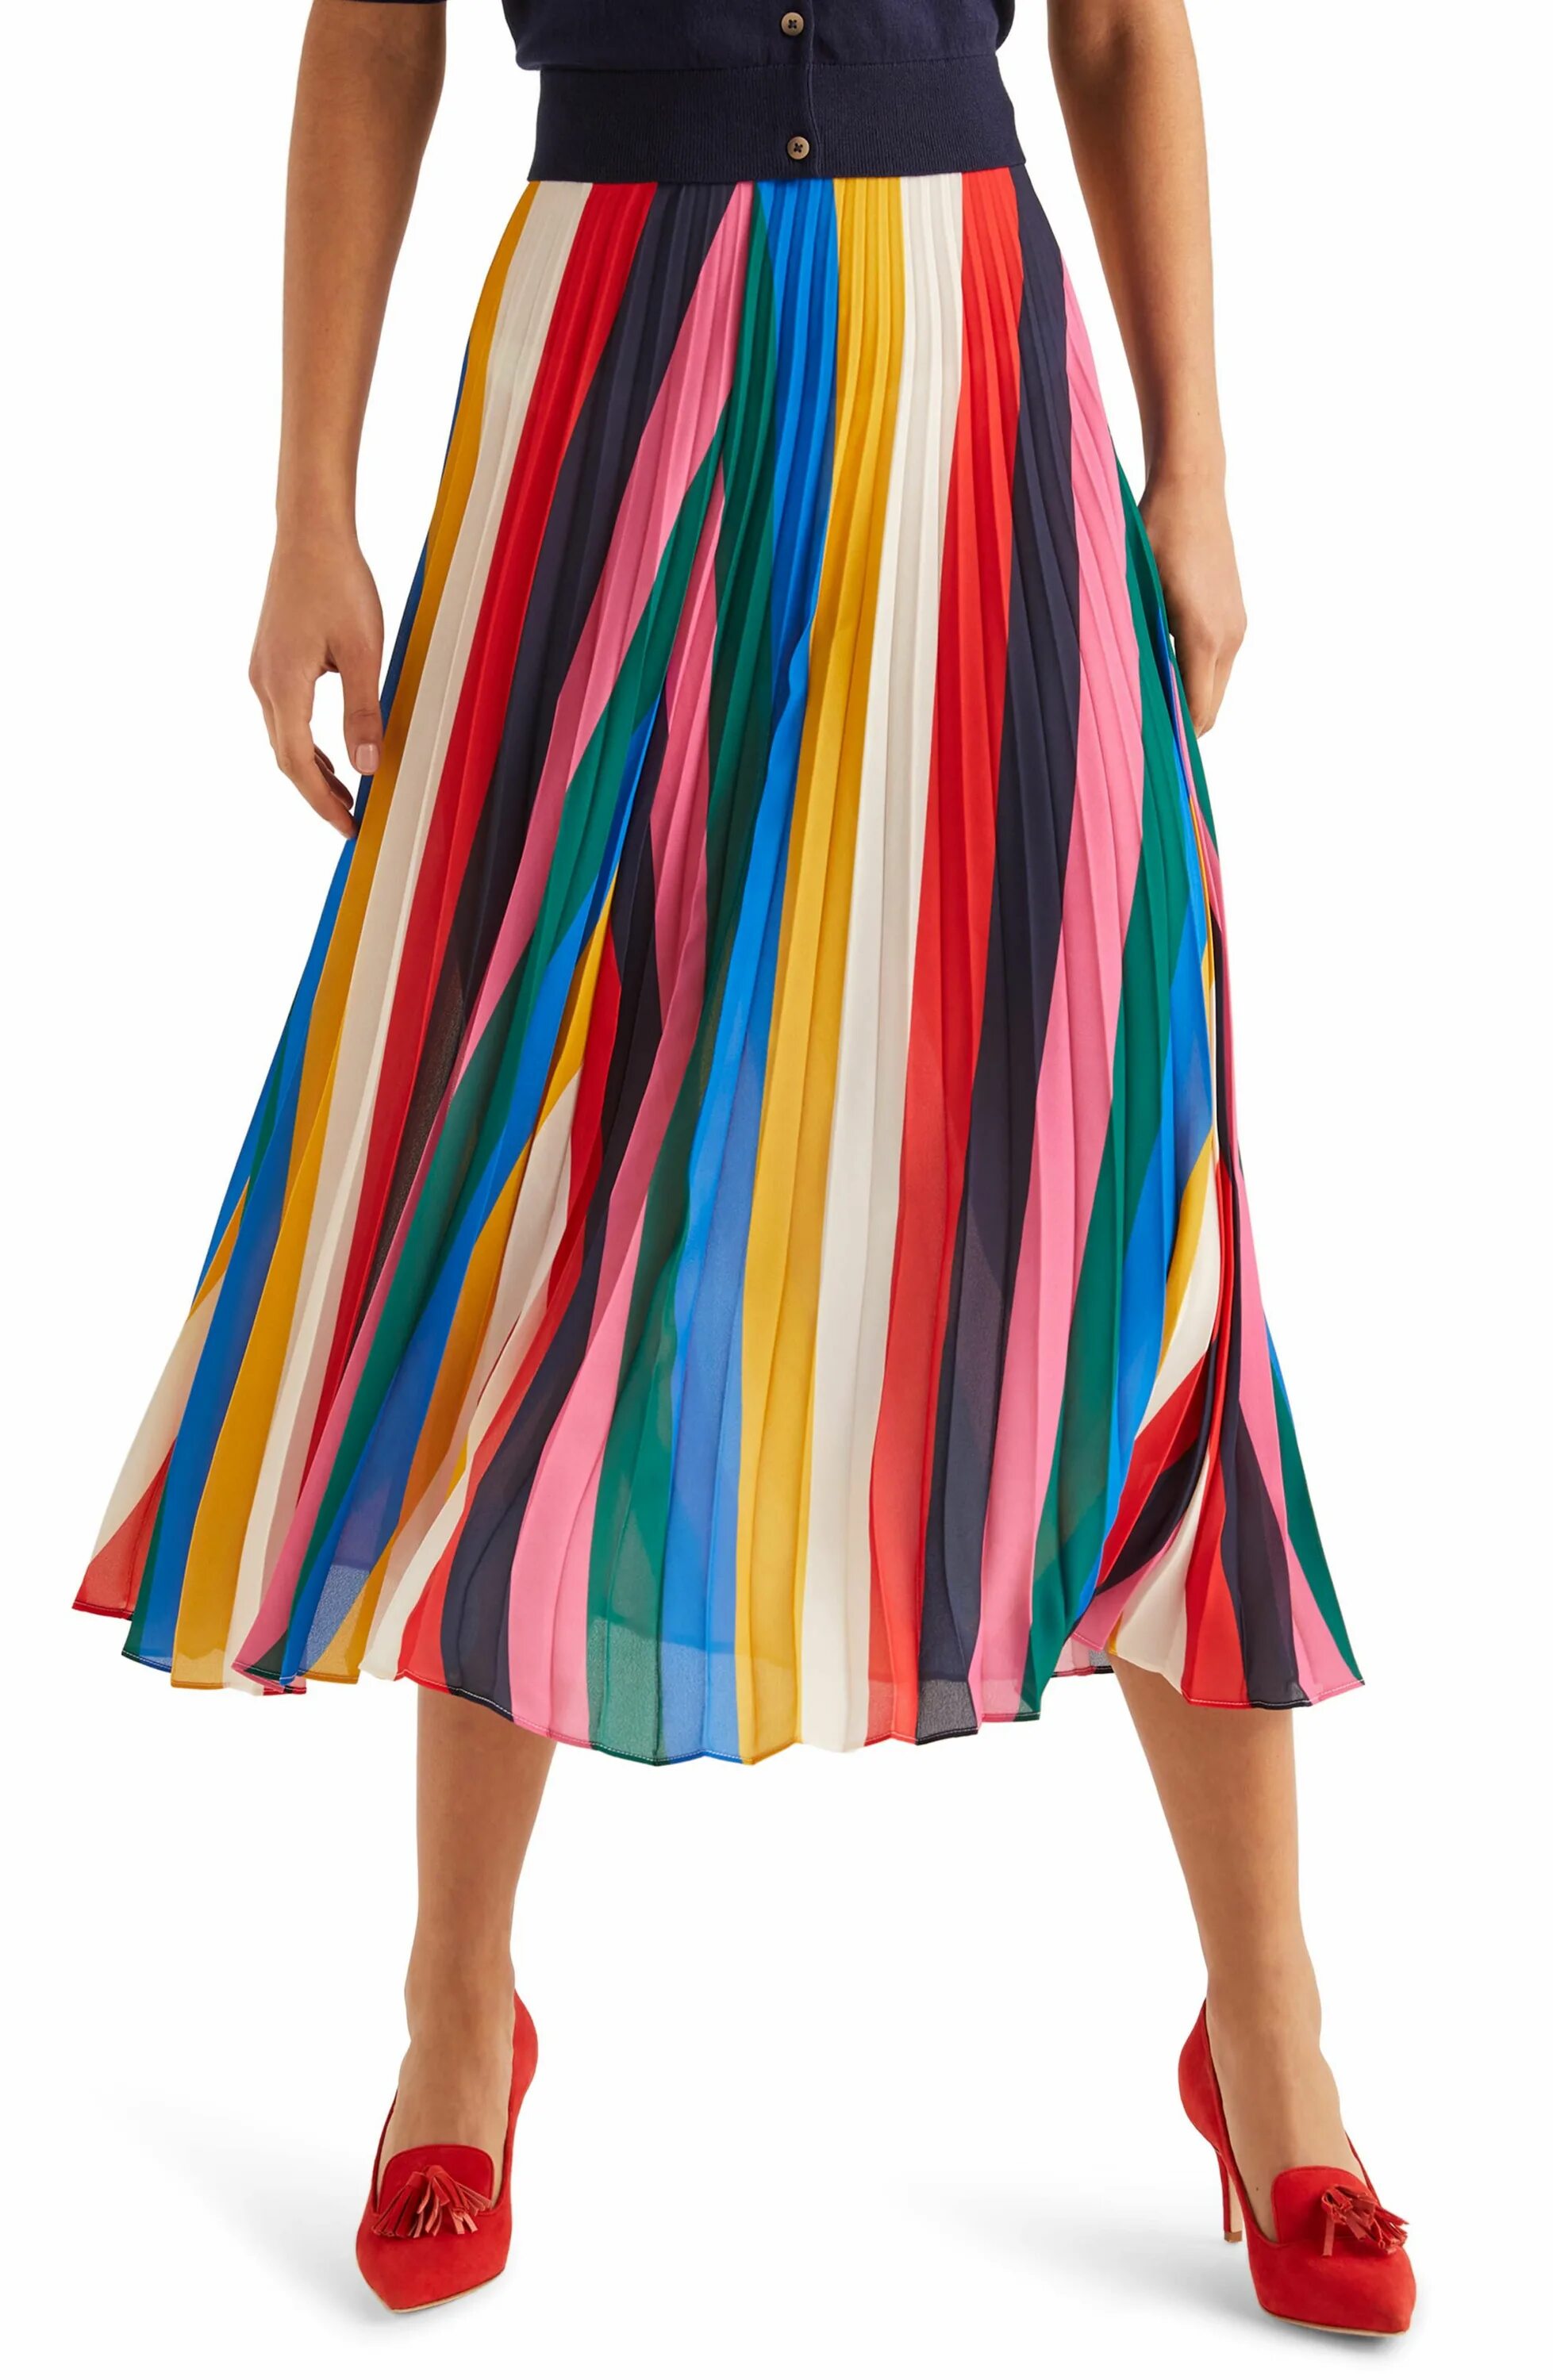 Юбка плиссированная разноцветная. Разноцветные юбки плиссированные. Юбка плиссированная миди разноцветная. Юбка с разноцветными клиньями.